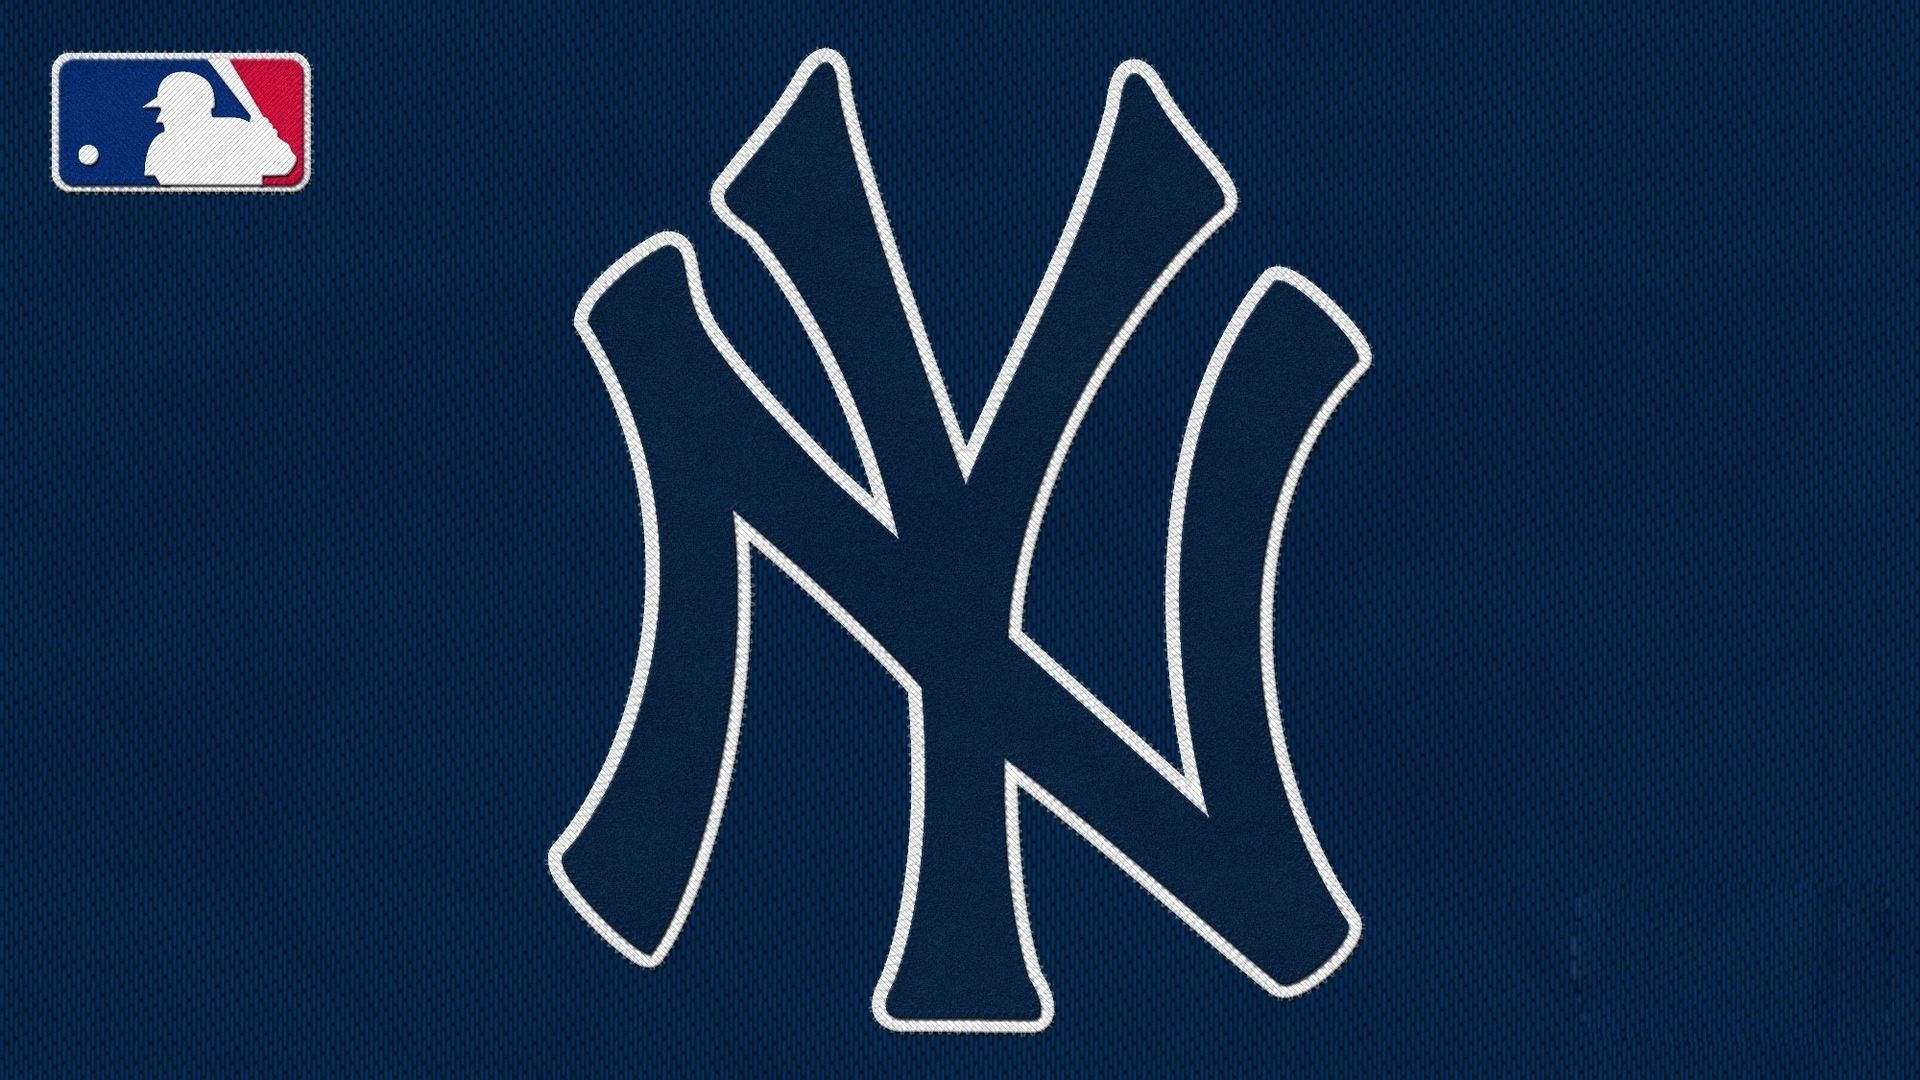 18 New York Yankees Wallpapers